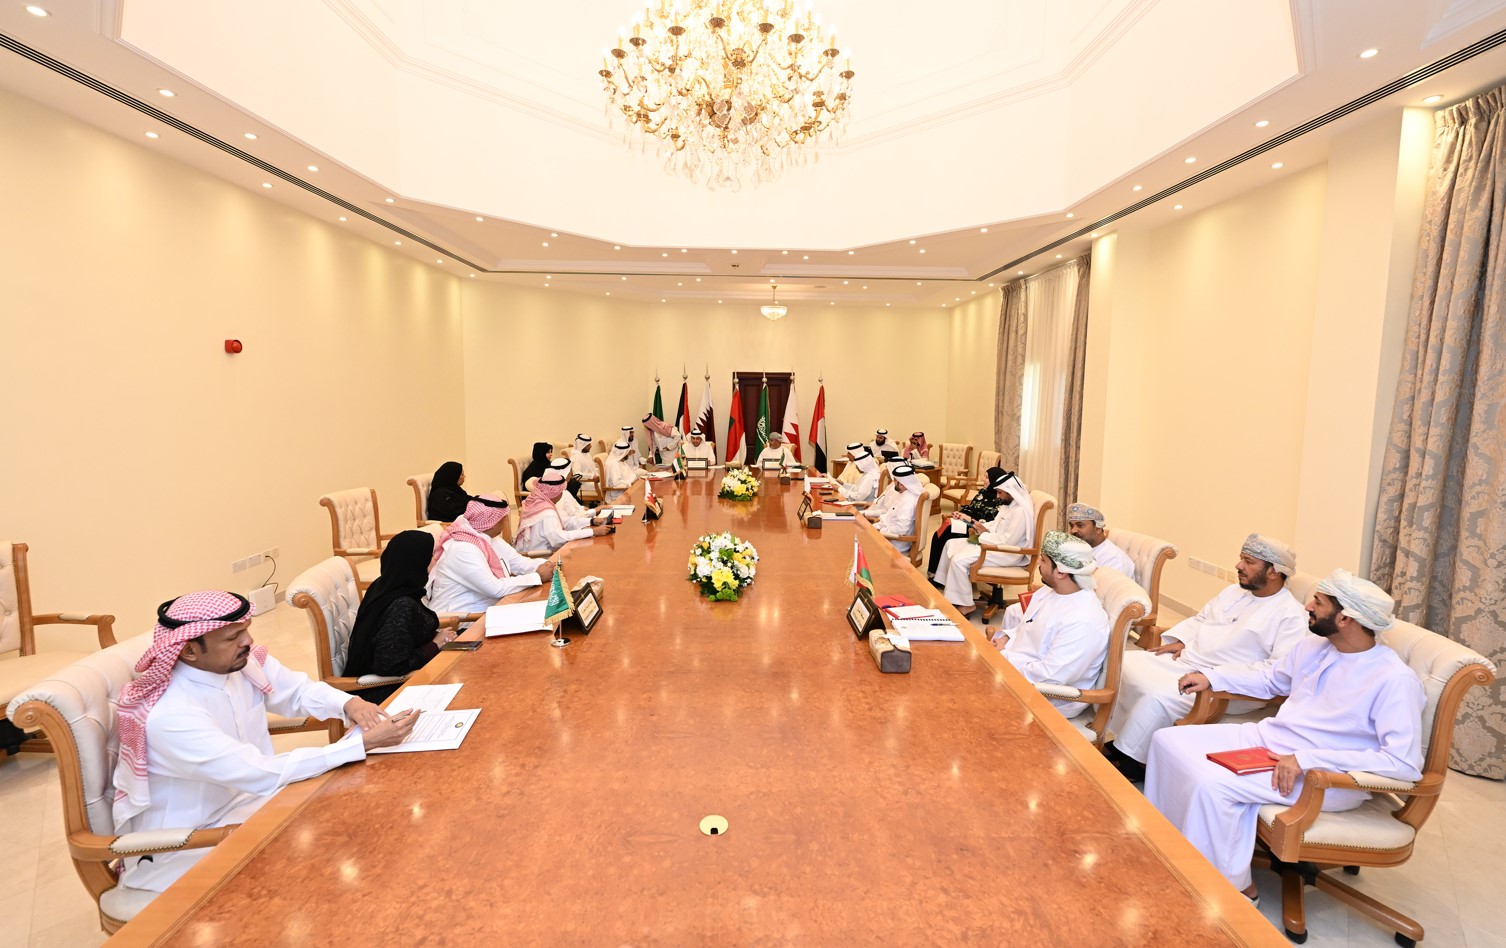 سلطنة عمان تستضيف الاجتماع التاسع عشر لرؤساء هيئات وجمعيات الهلال الأحمر الخليجي